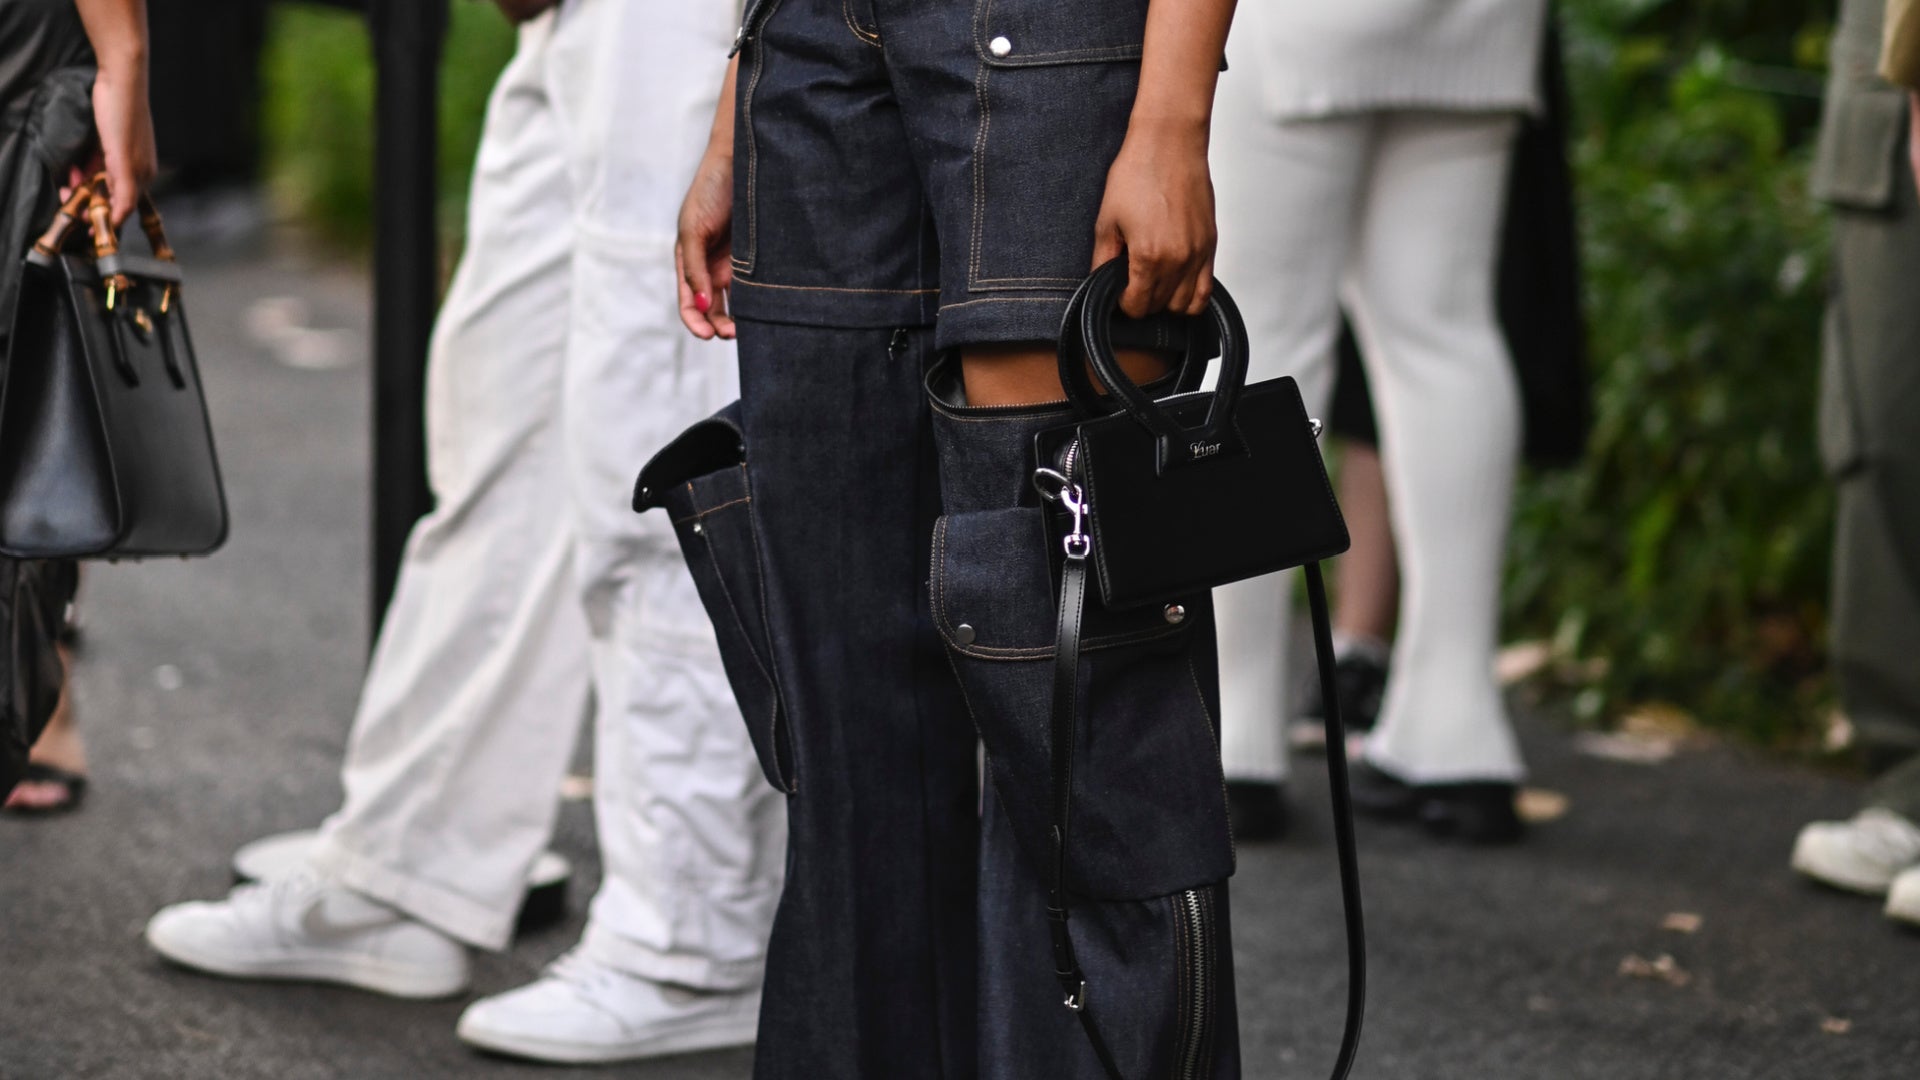 The crazy handbags of Louis Vuitton's Spring Summer 2023